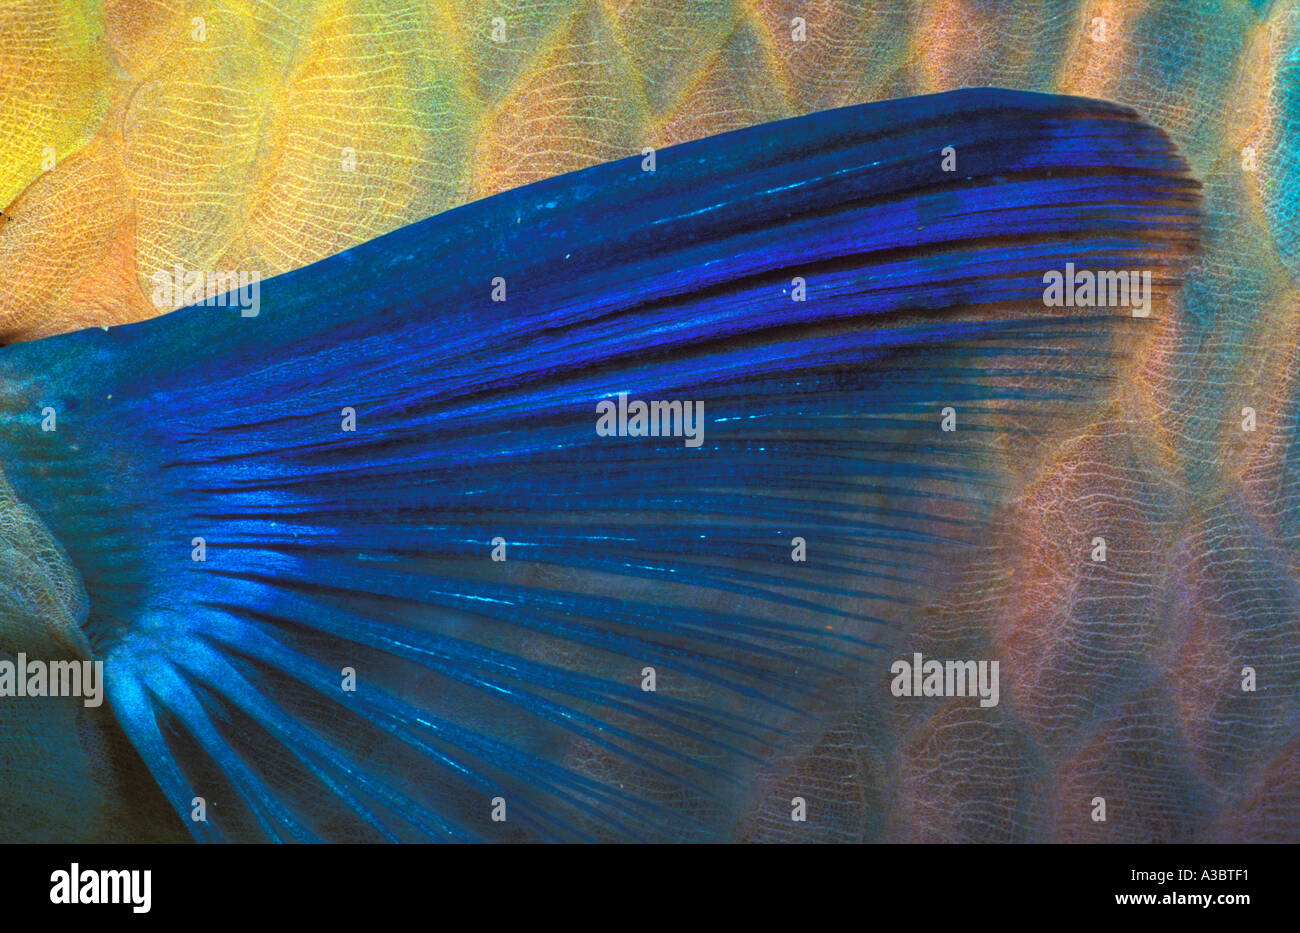 Parrotfish fin, close-up Stock Photo